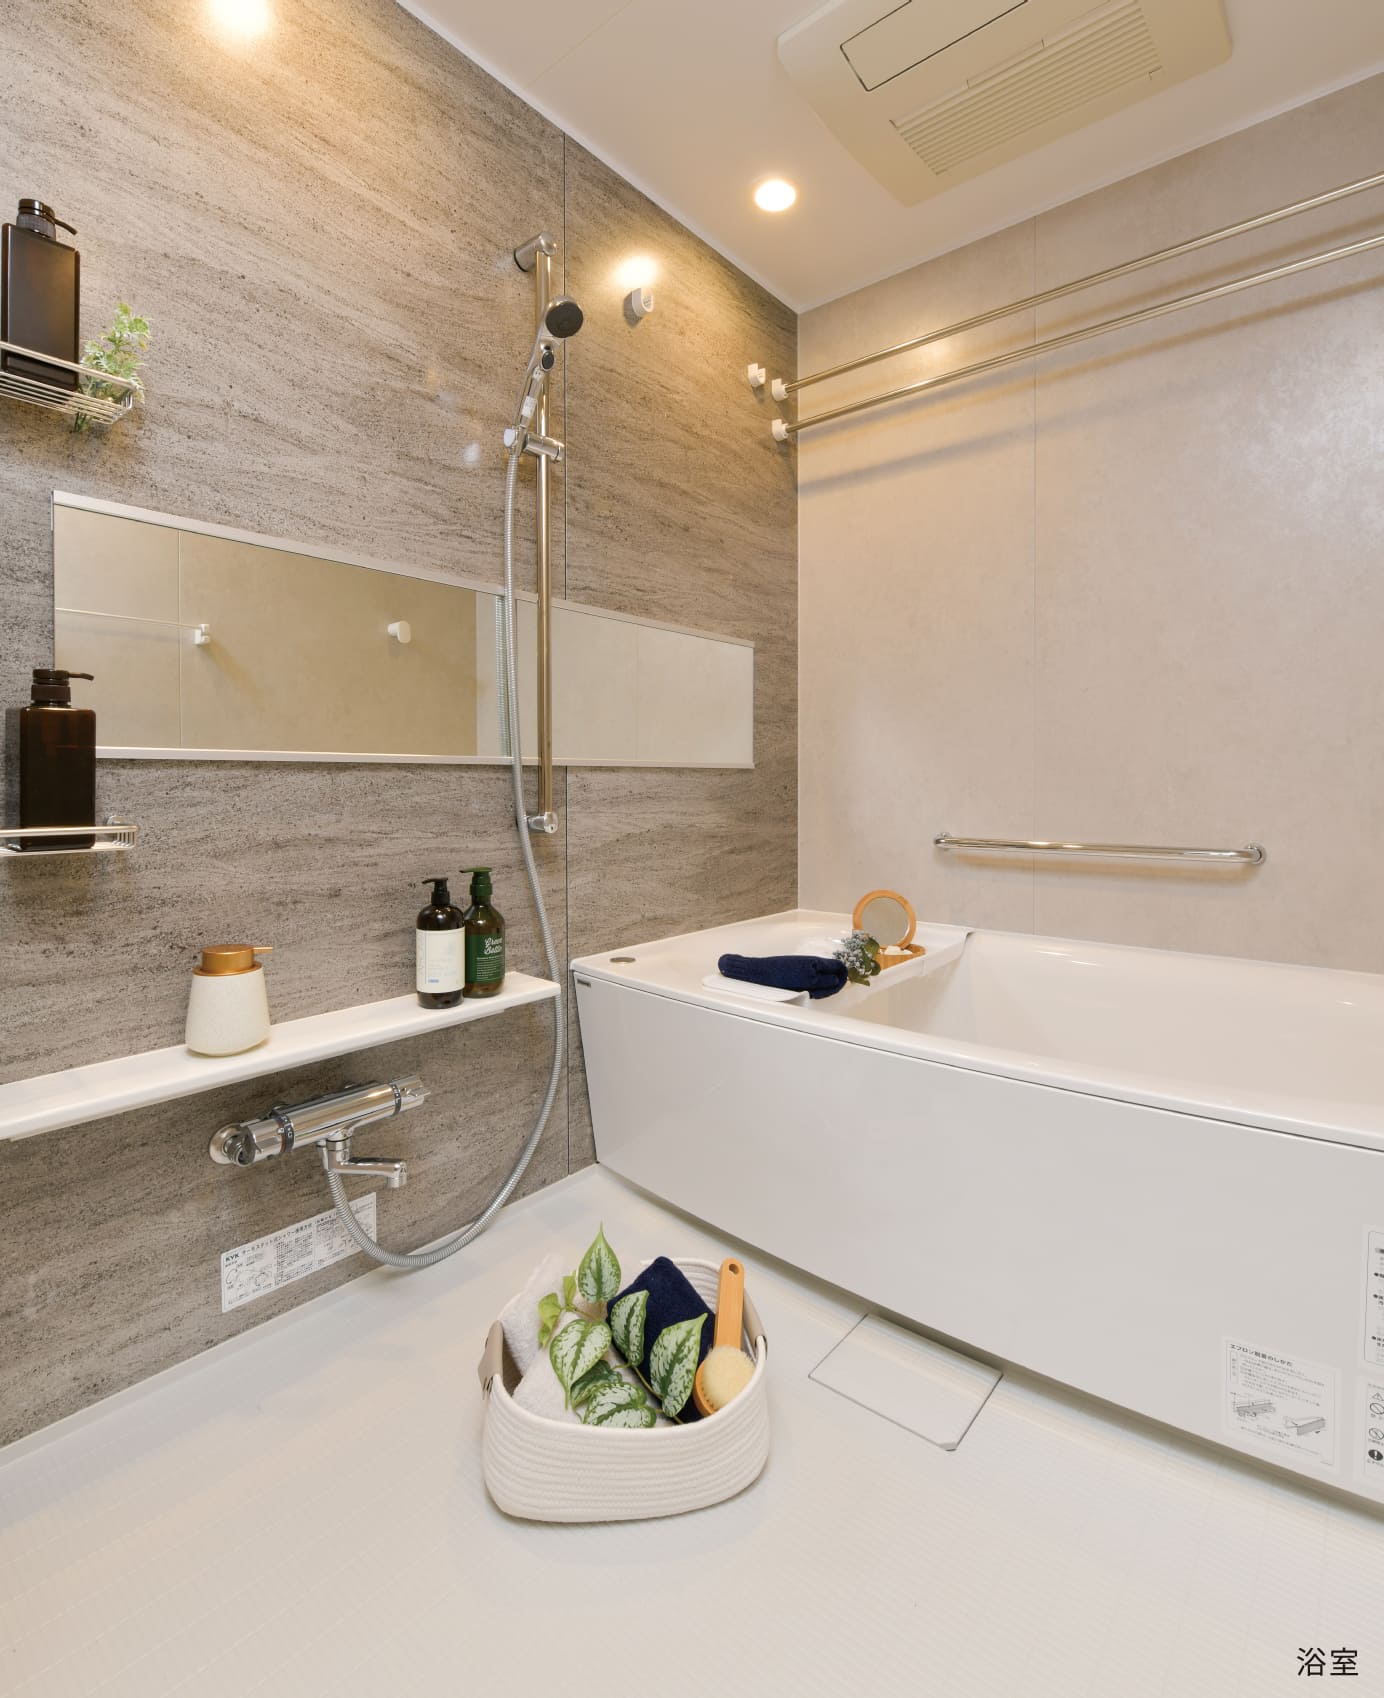 BATHROOM 単に「洗う」「浸かる」というバスルームの機能以上に、美しく磨き、過ごすための空間へ。